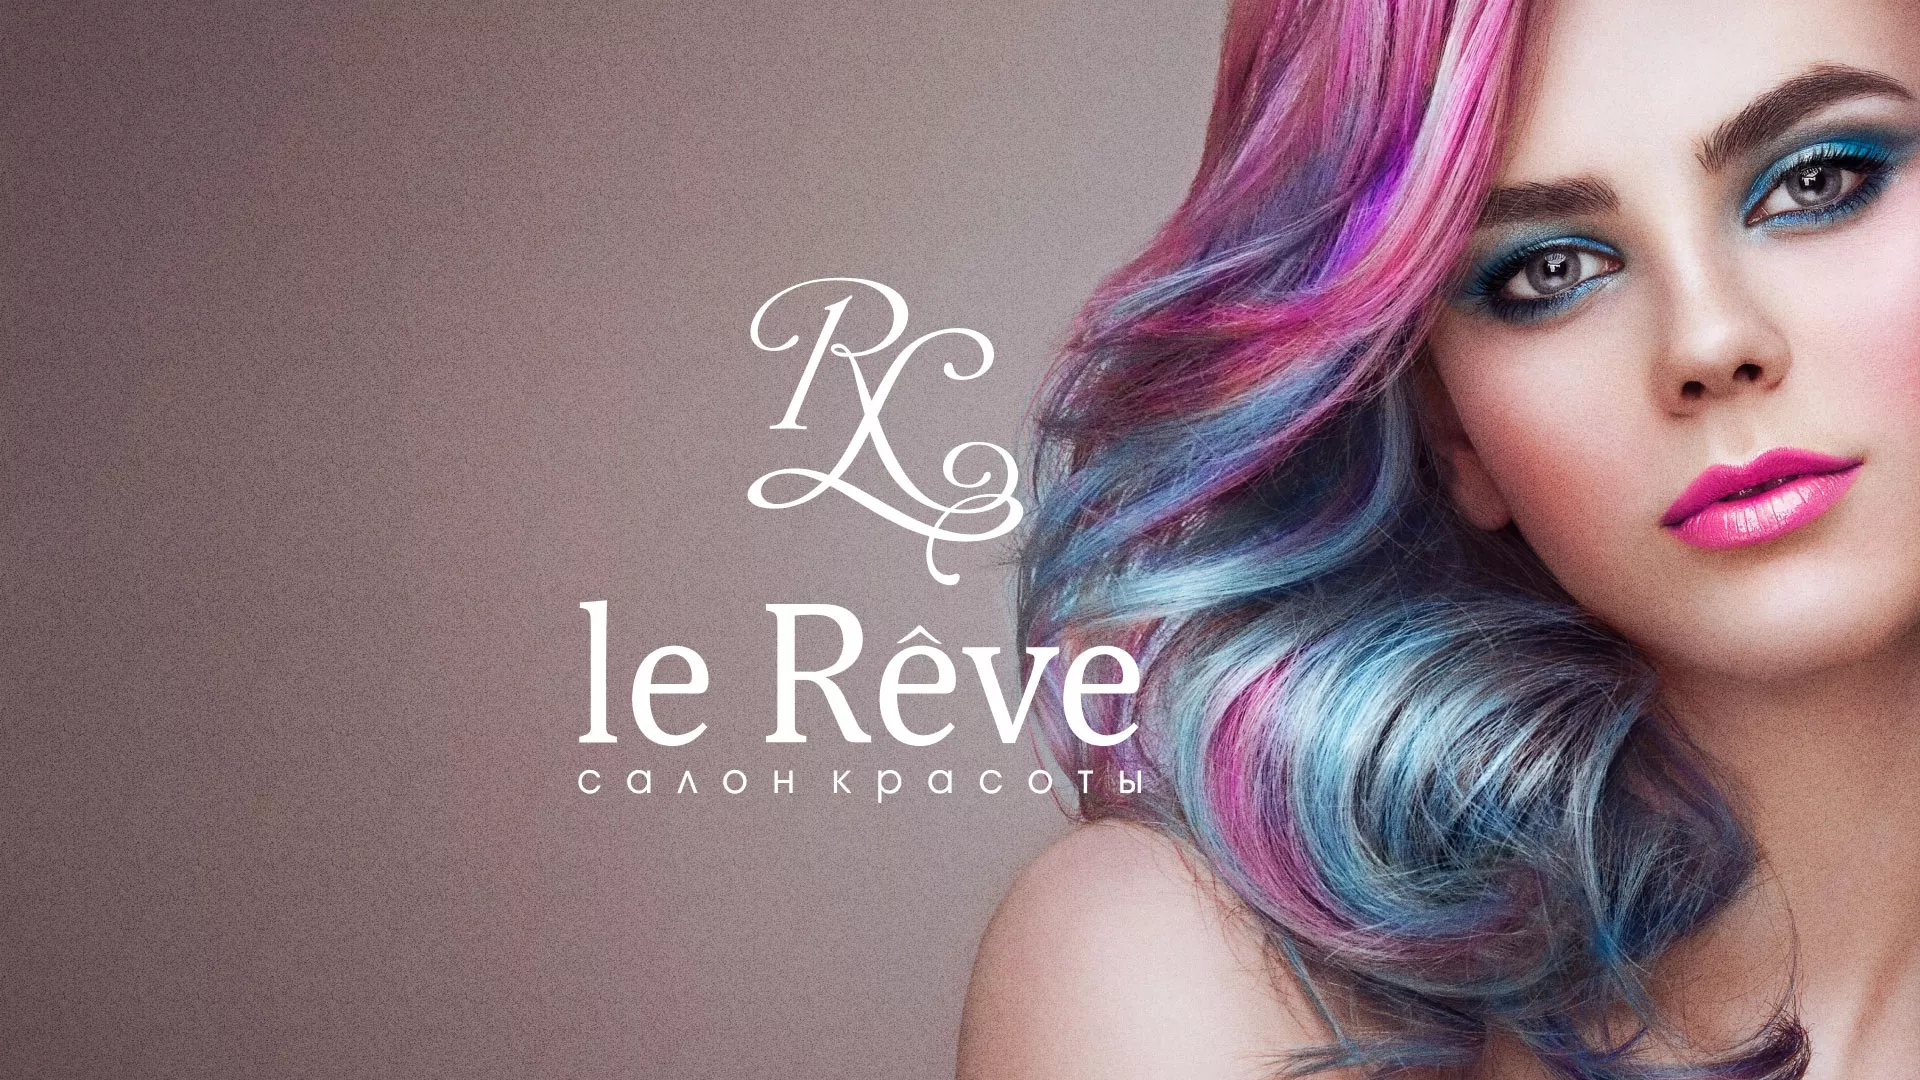 Создание сайта для салона красоты «Le Reve» в Усинске